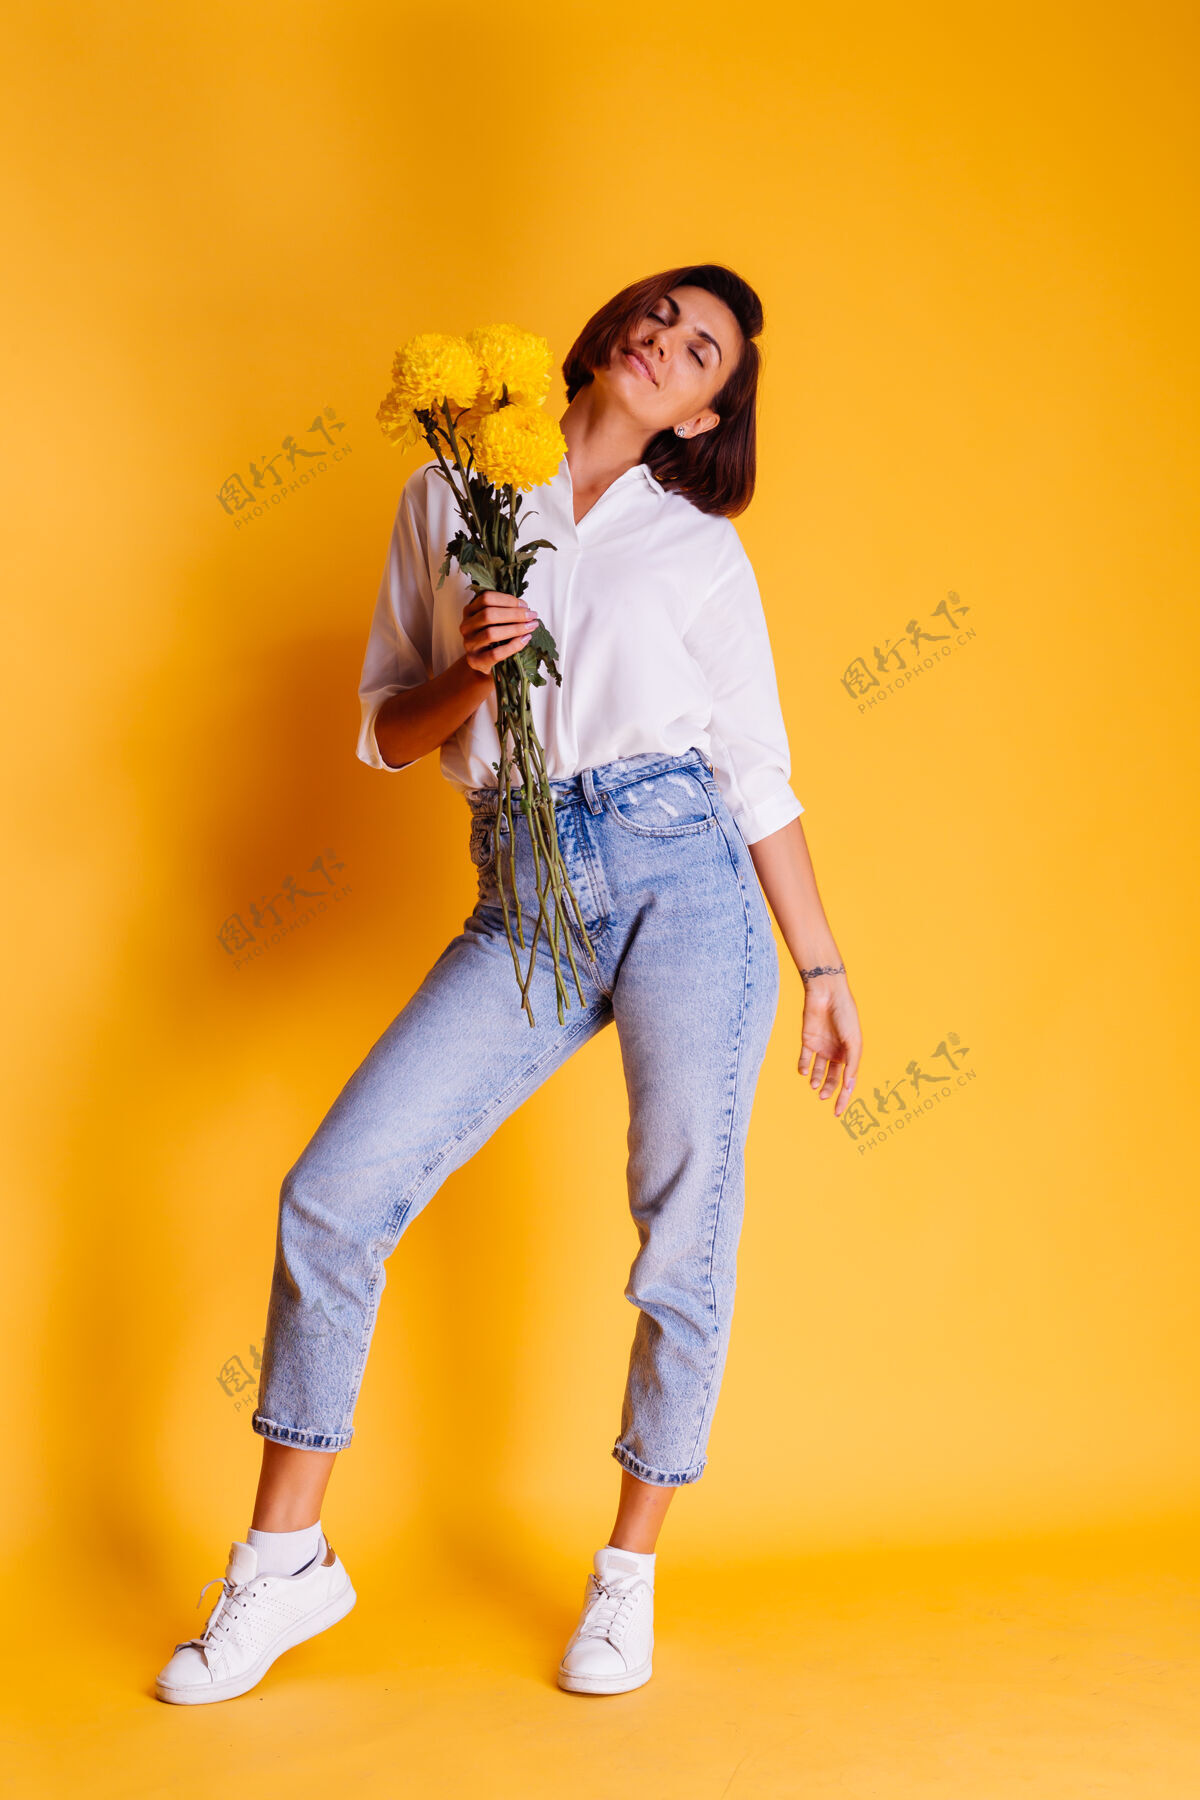 可爱摄影棚拍摄的黄色背景快乐的白人妇女短发穿着休闲服白衬衫和牛仔裤手持一束黄色紫苑惊喜华丽微笑